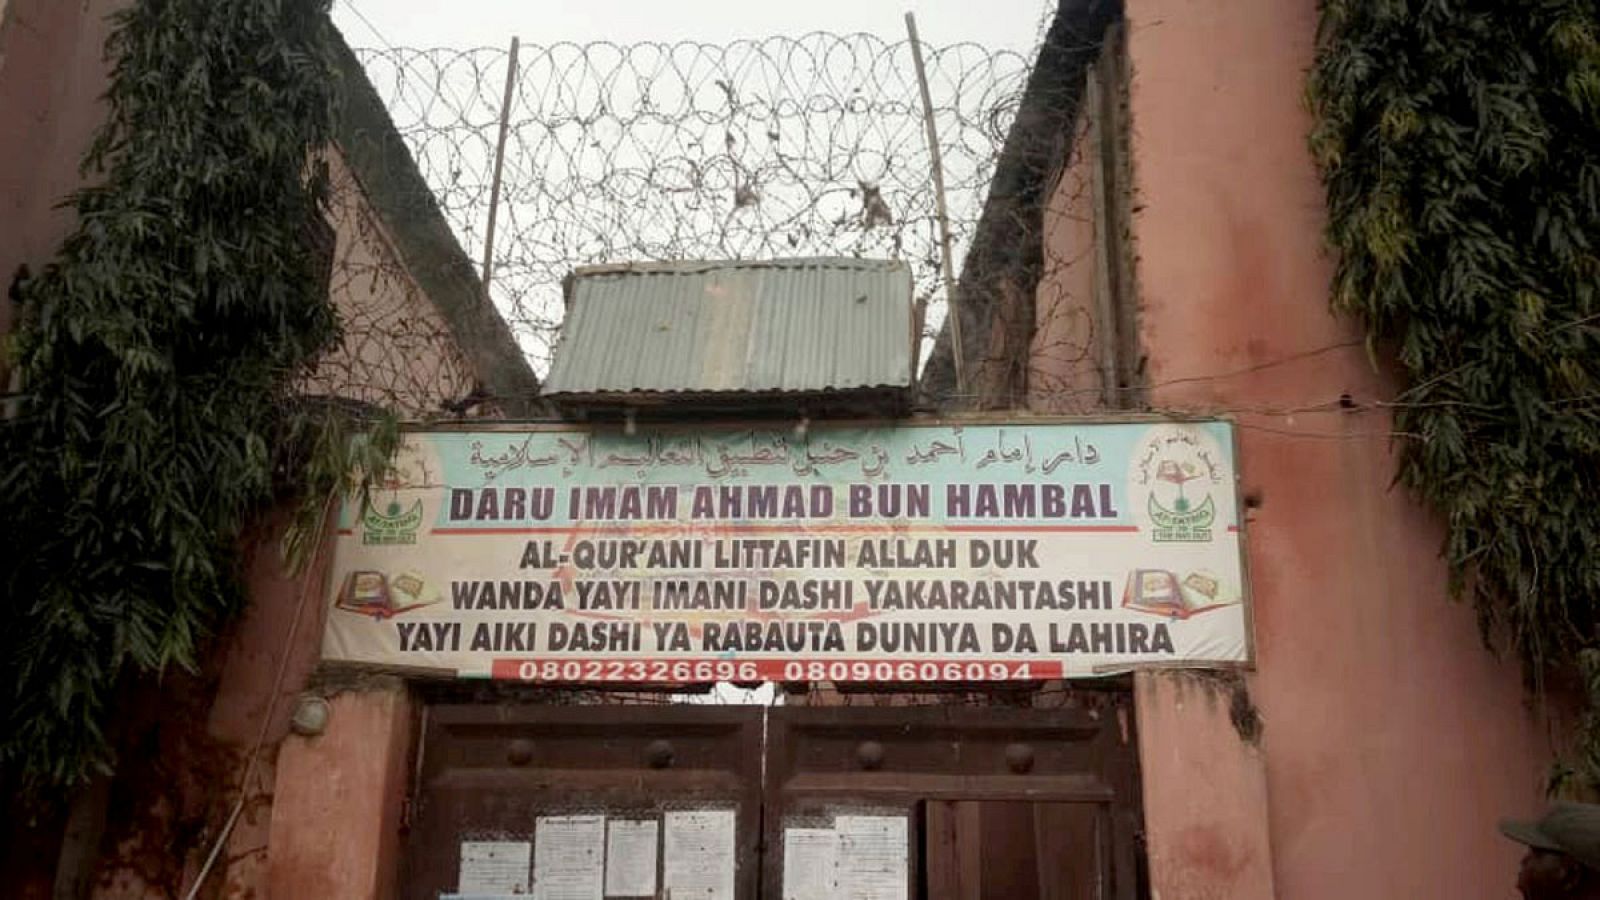 Imagen de la fachada de la supuesta escuela coránica dónde se han liberado a más de 300 personas encadenadas